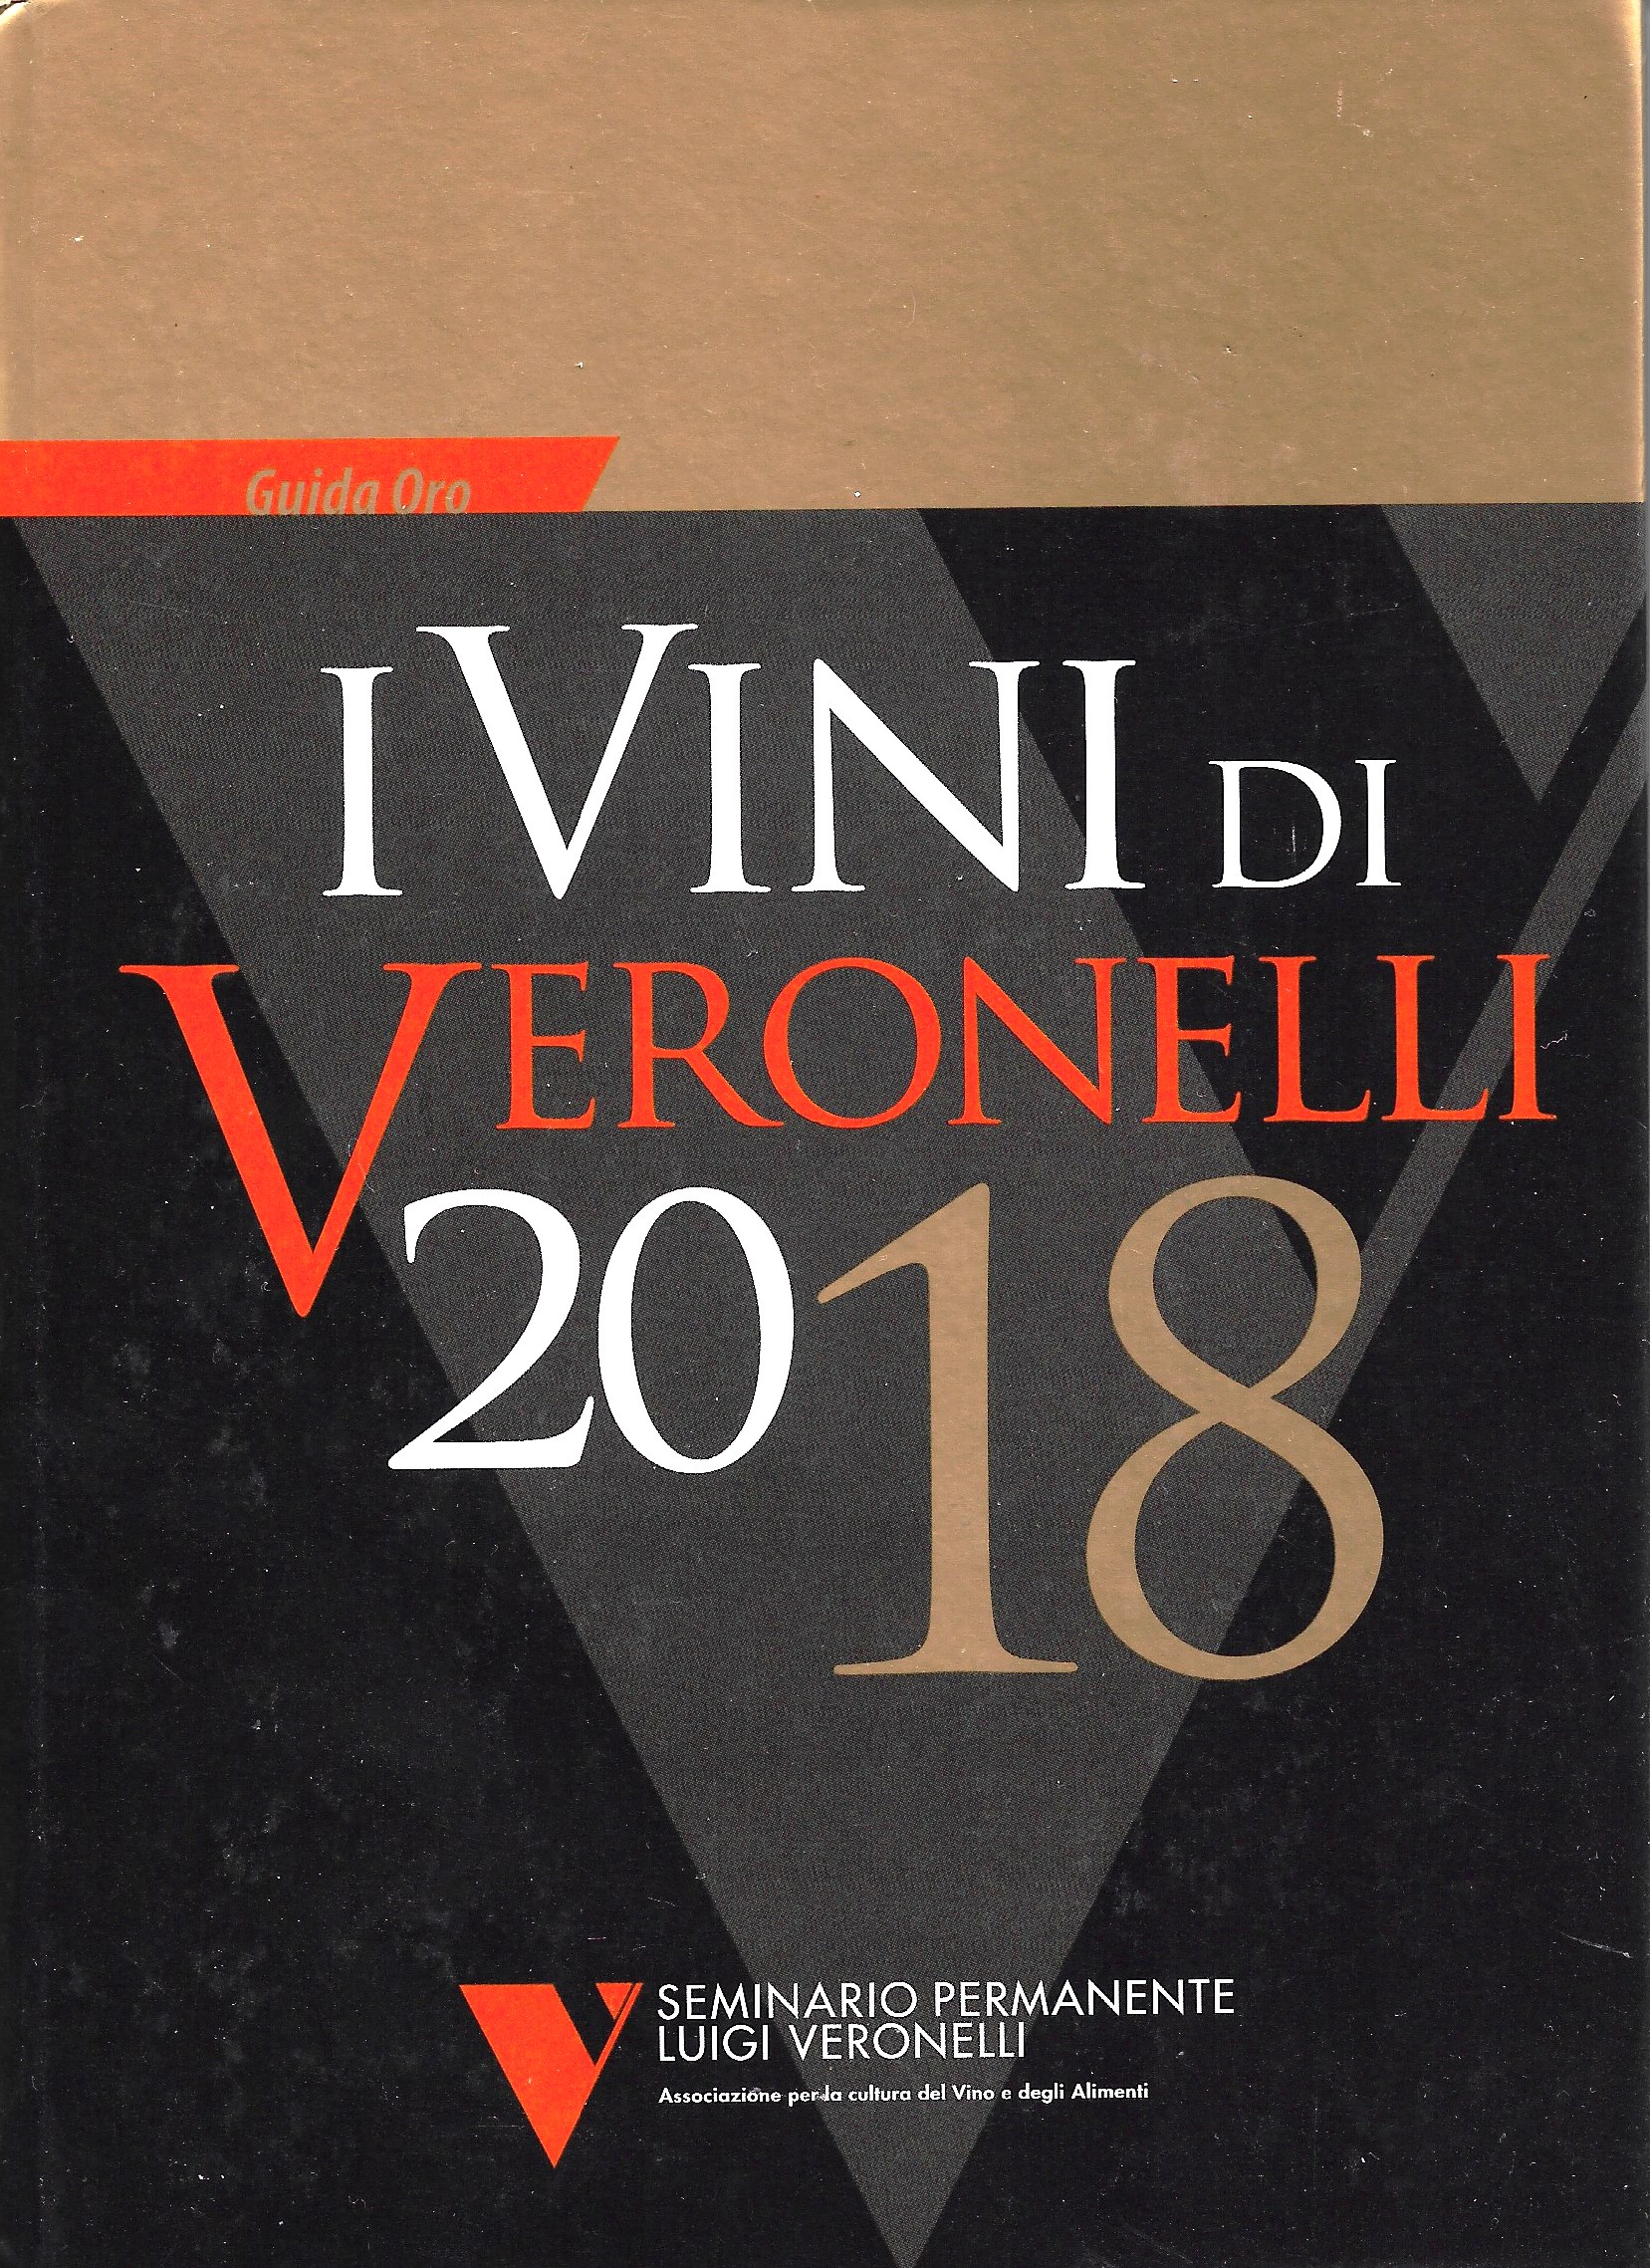 I Vini di Veronelli 2018